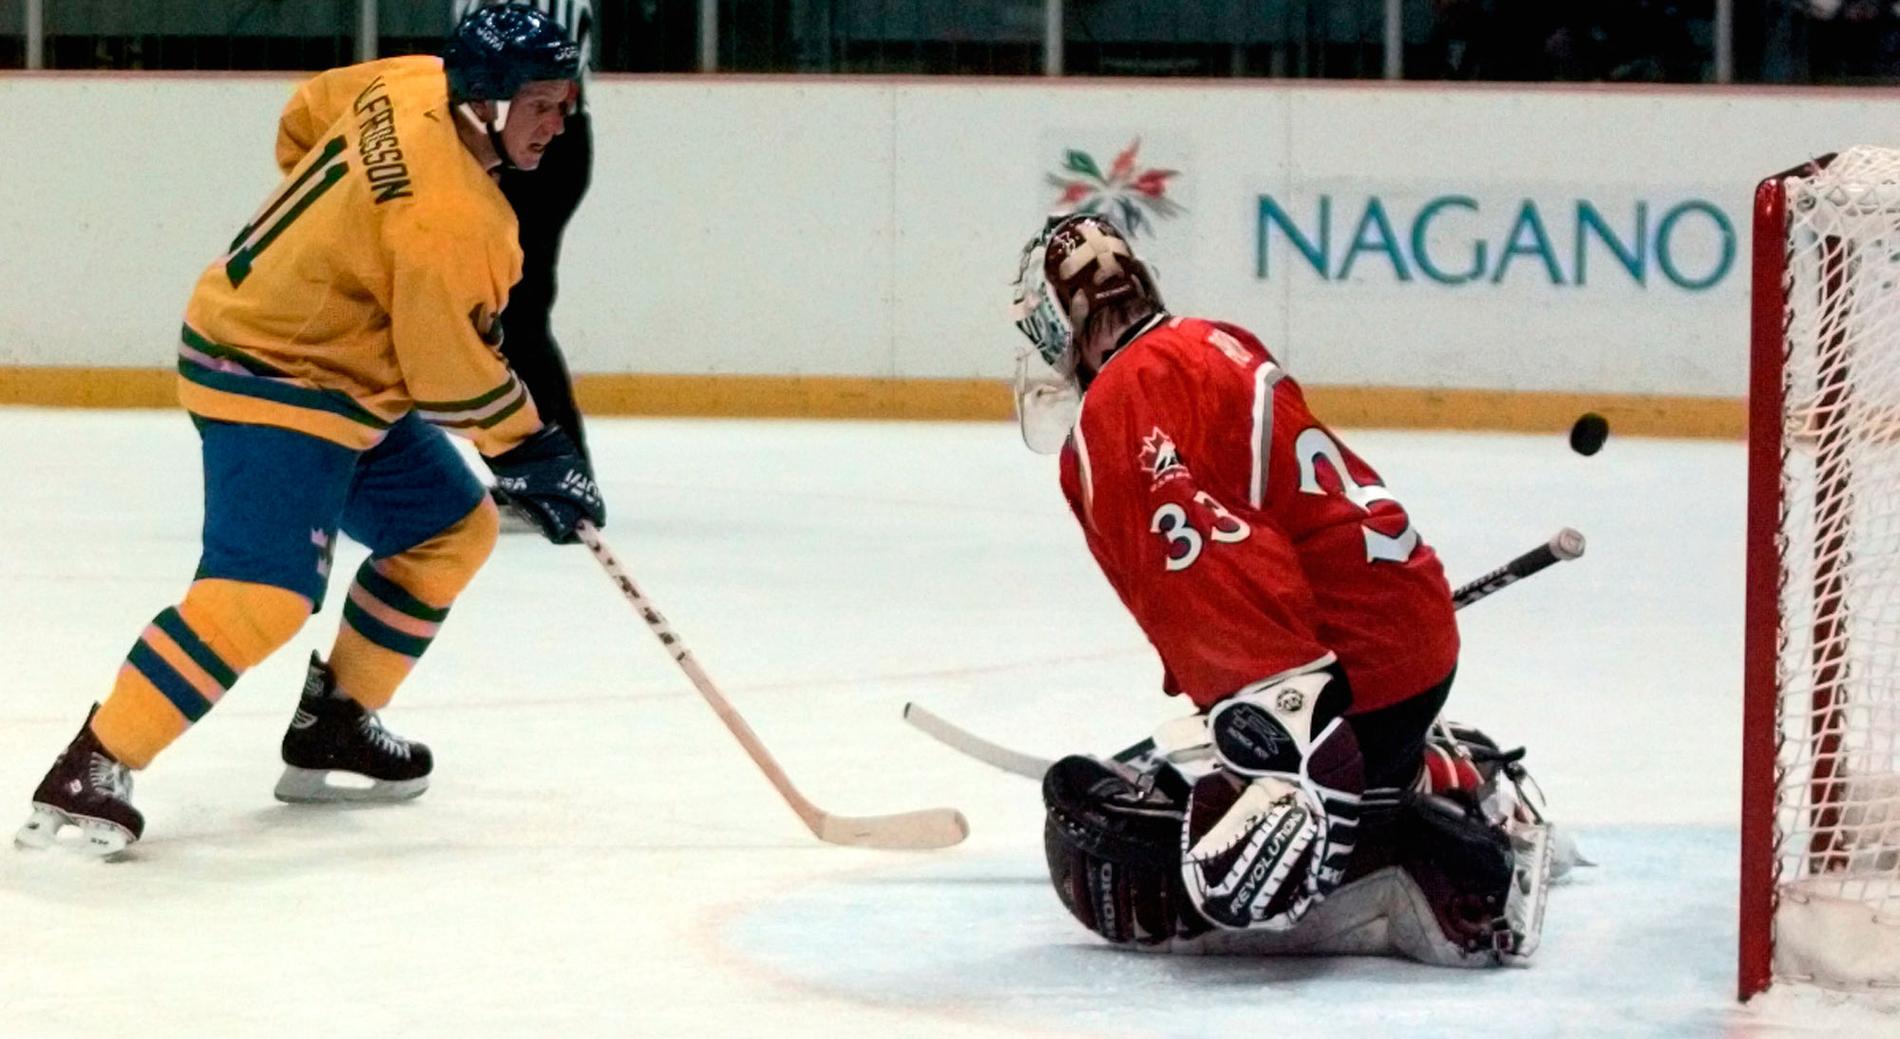 OS-turneringen i Nagano 1998 är inget som Alfredsson vill minnas trots målet här!